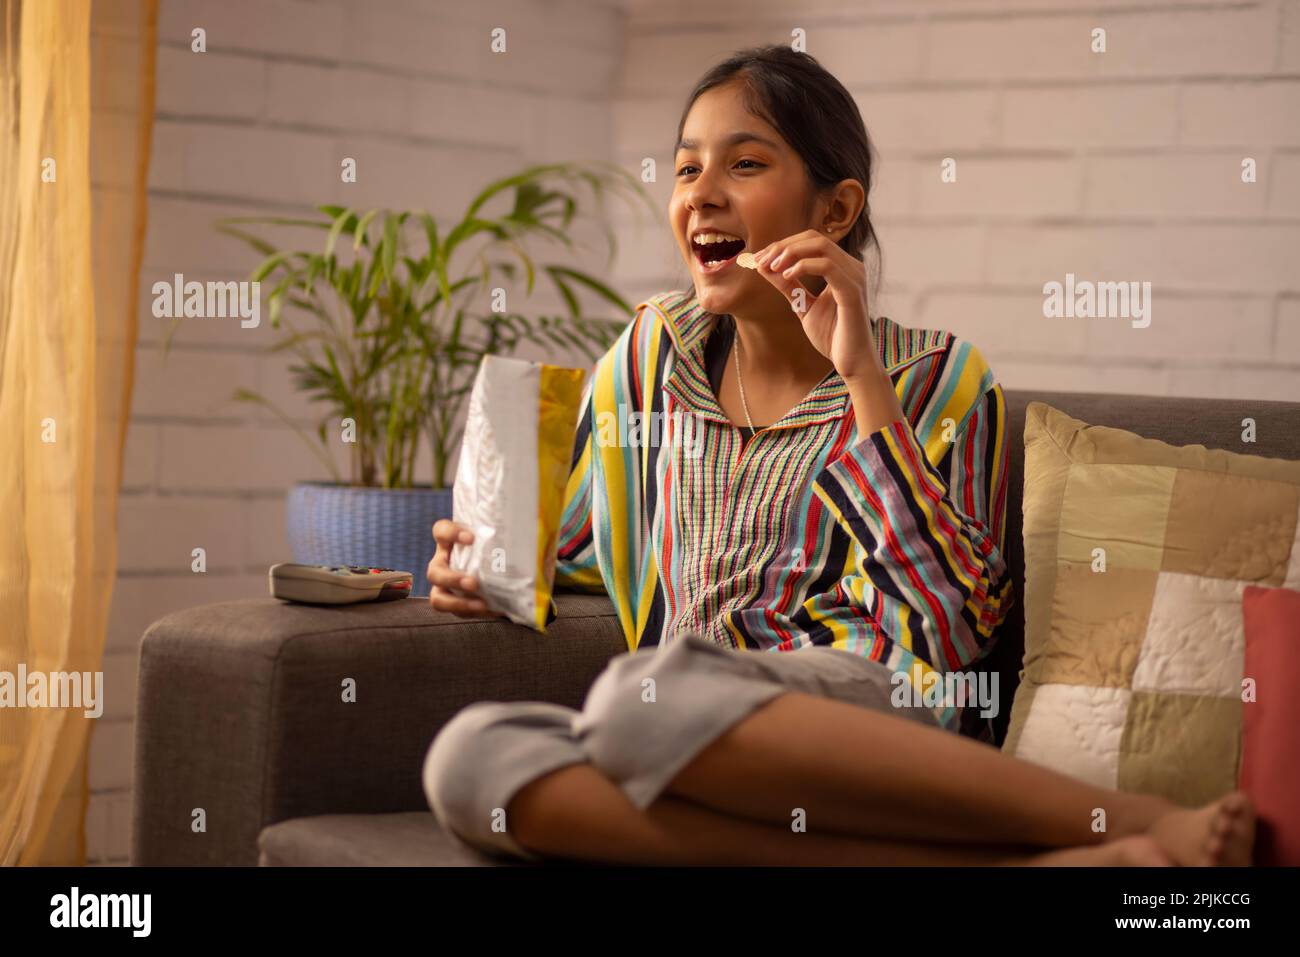 Porträt eines aufgeregten Mädchens, das im Wohnzimmer fernsieht Stockfoto